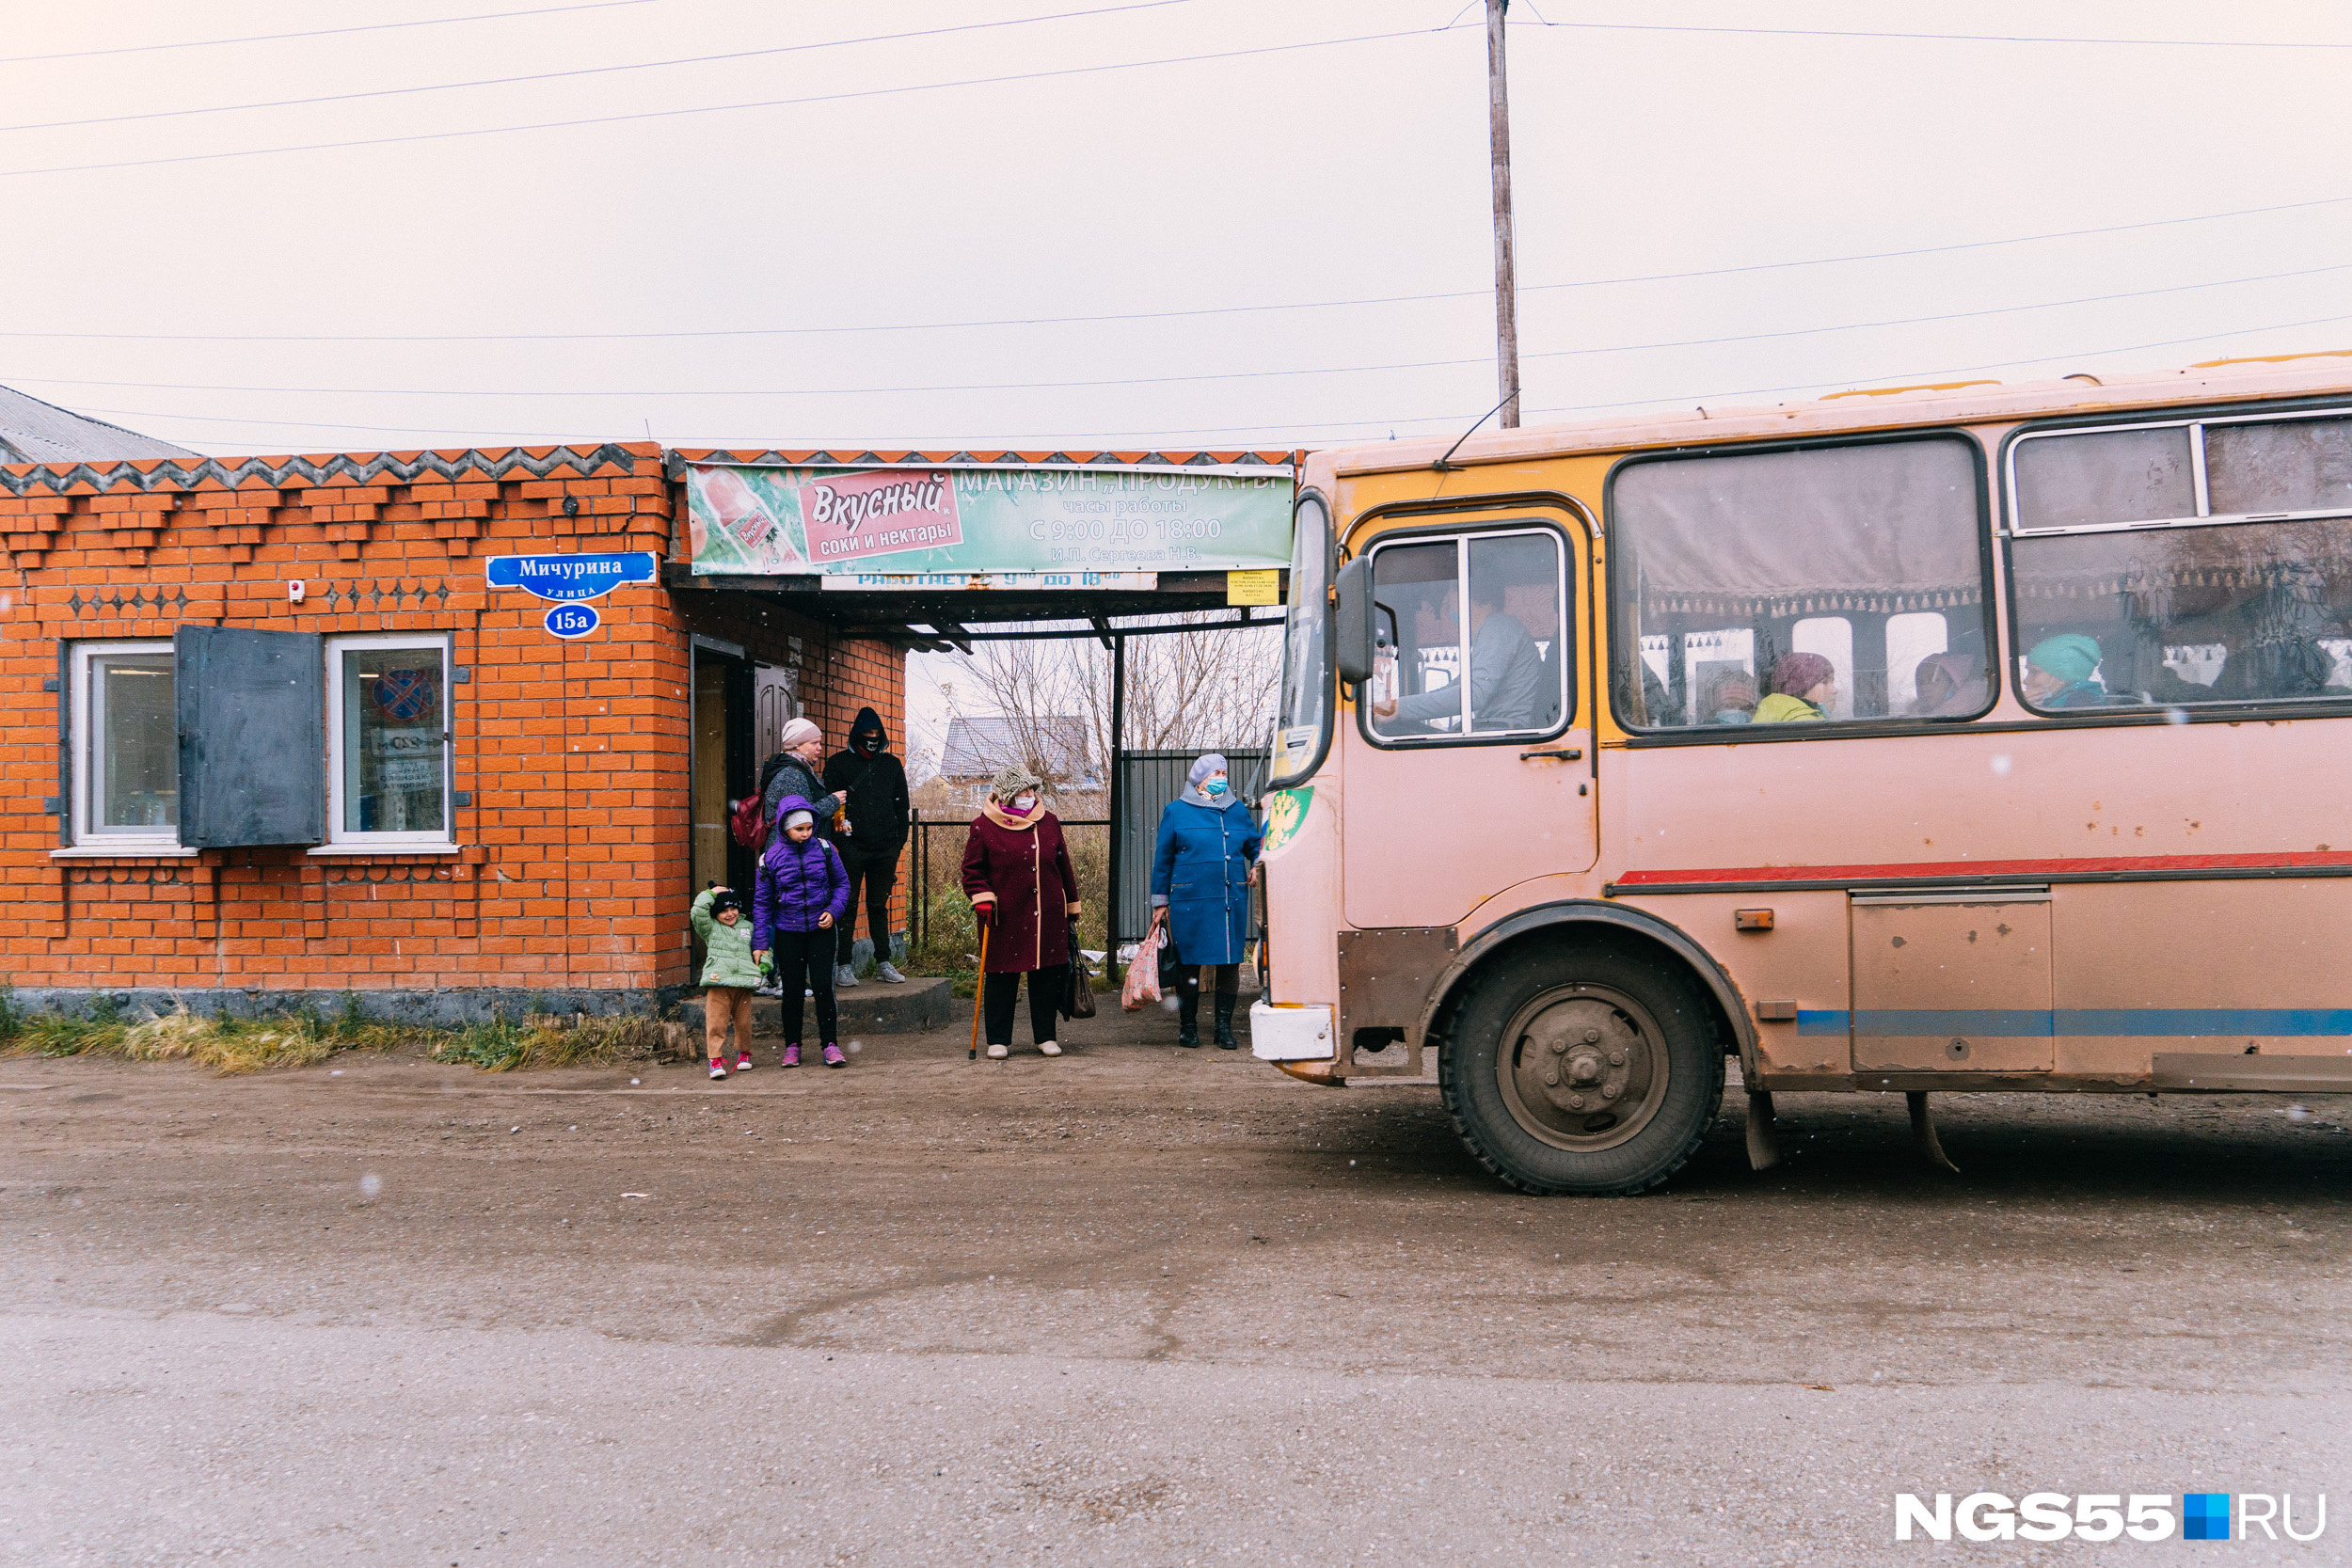 Старые автобусы время от времени курсируют по городу, а потом уезжают в соседние села